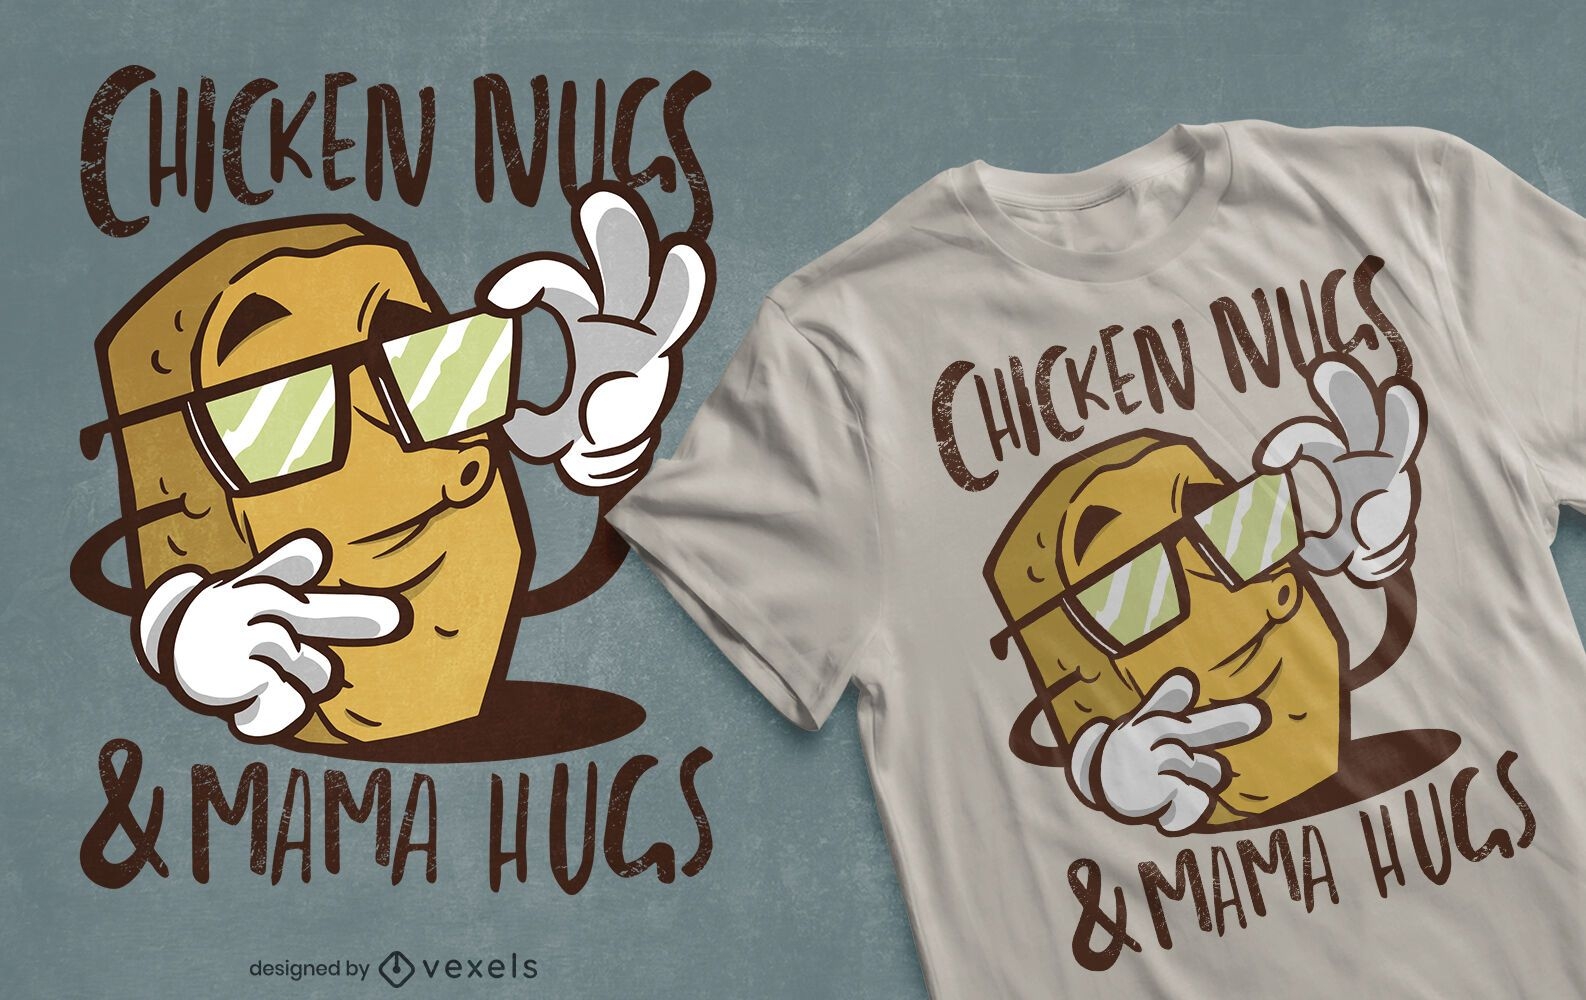 Chicken nugget quote t-shirt design